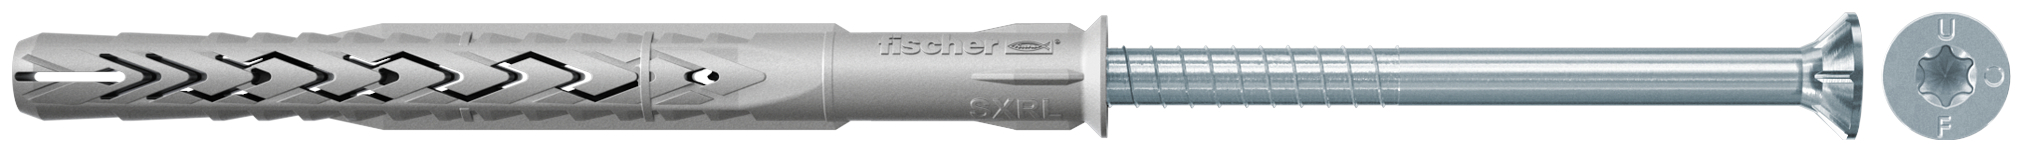 fischer Tasselli prolungati SXRL 14X120 T (1 Pz.) Tassello prolungato in nylon con marcatura CE con vite premontata T.S.P. impronta torx fie2560